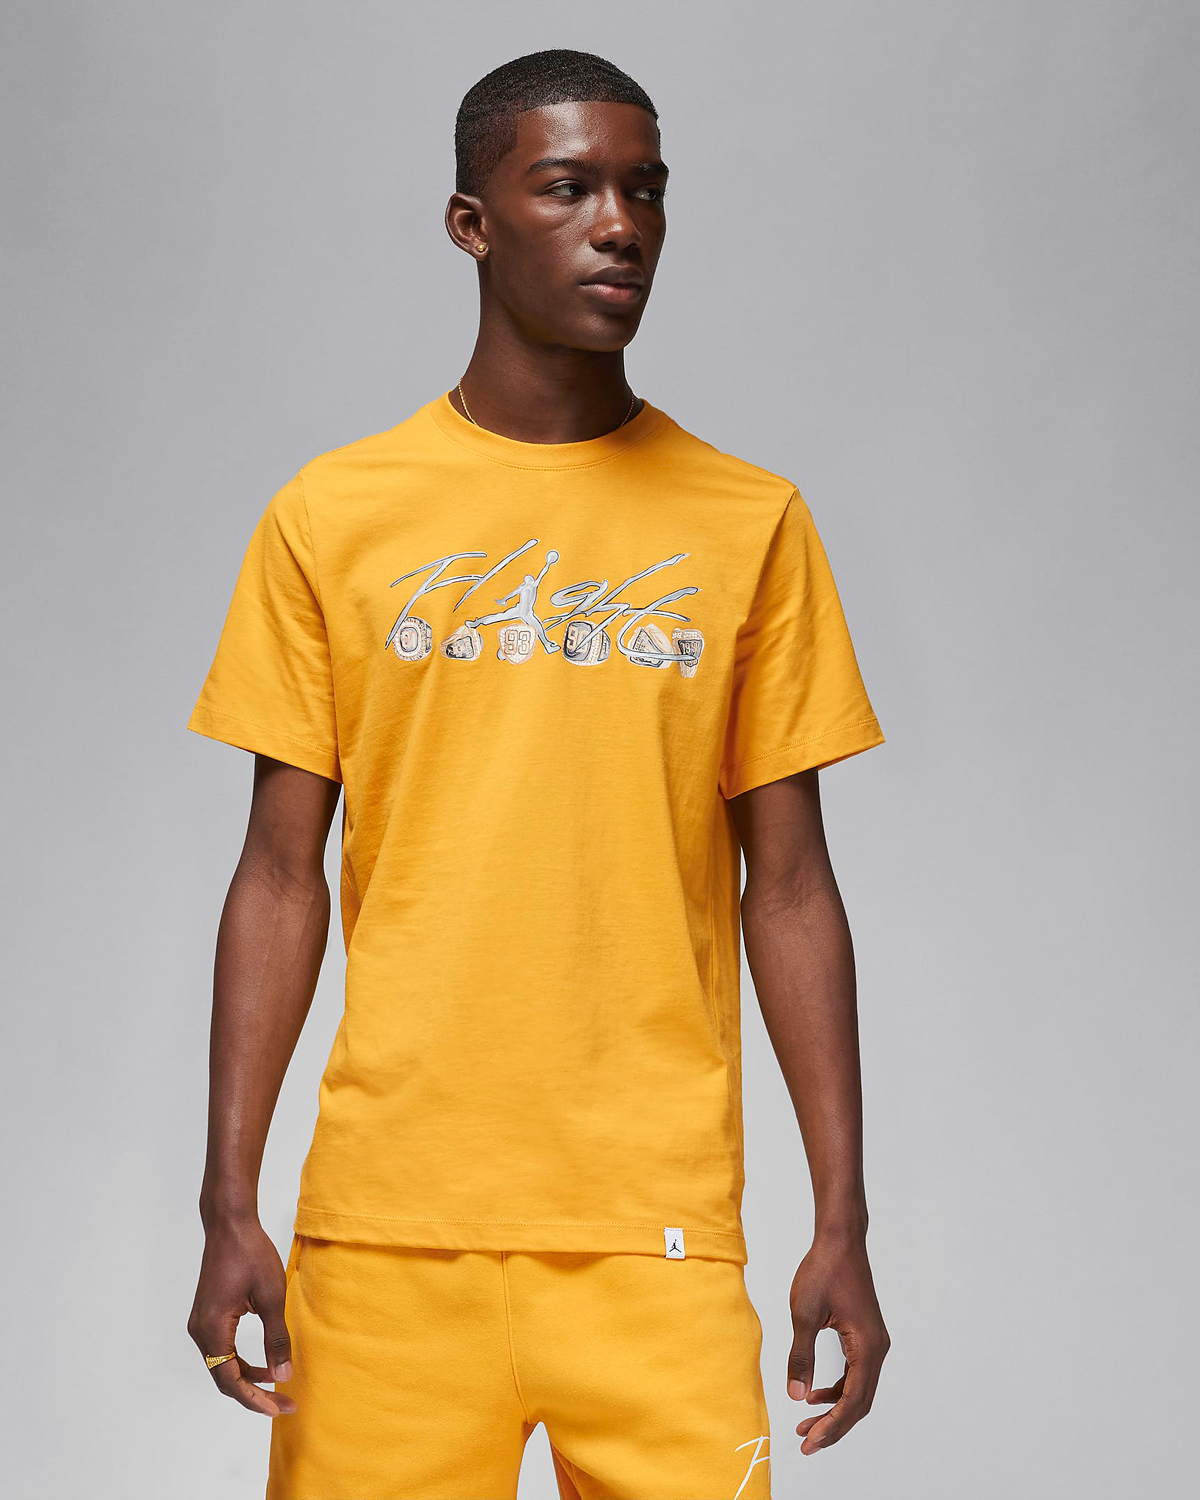 Air-Jordan-6-Yellow-Ochre-Matching-Shirt-1